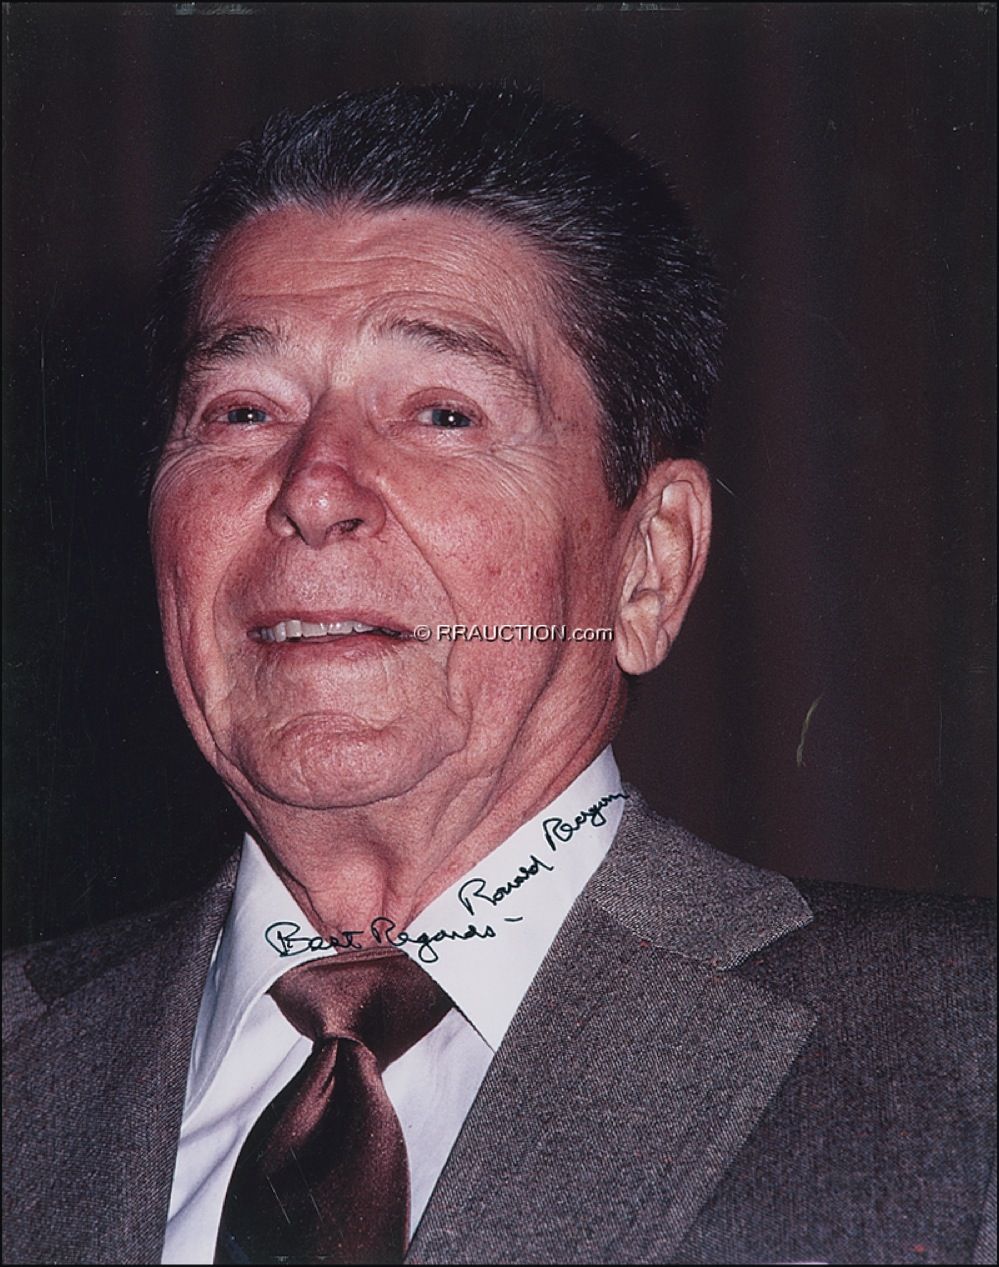 Lot #134 Ronald Reagan